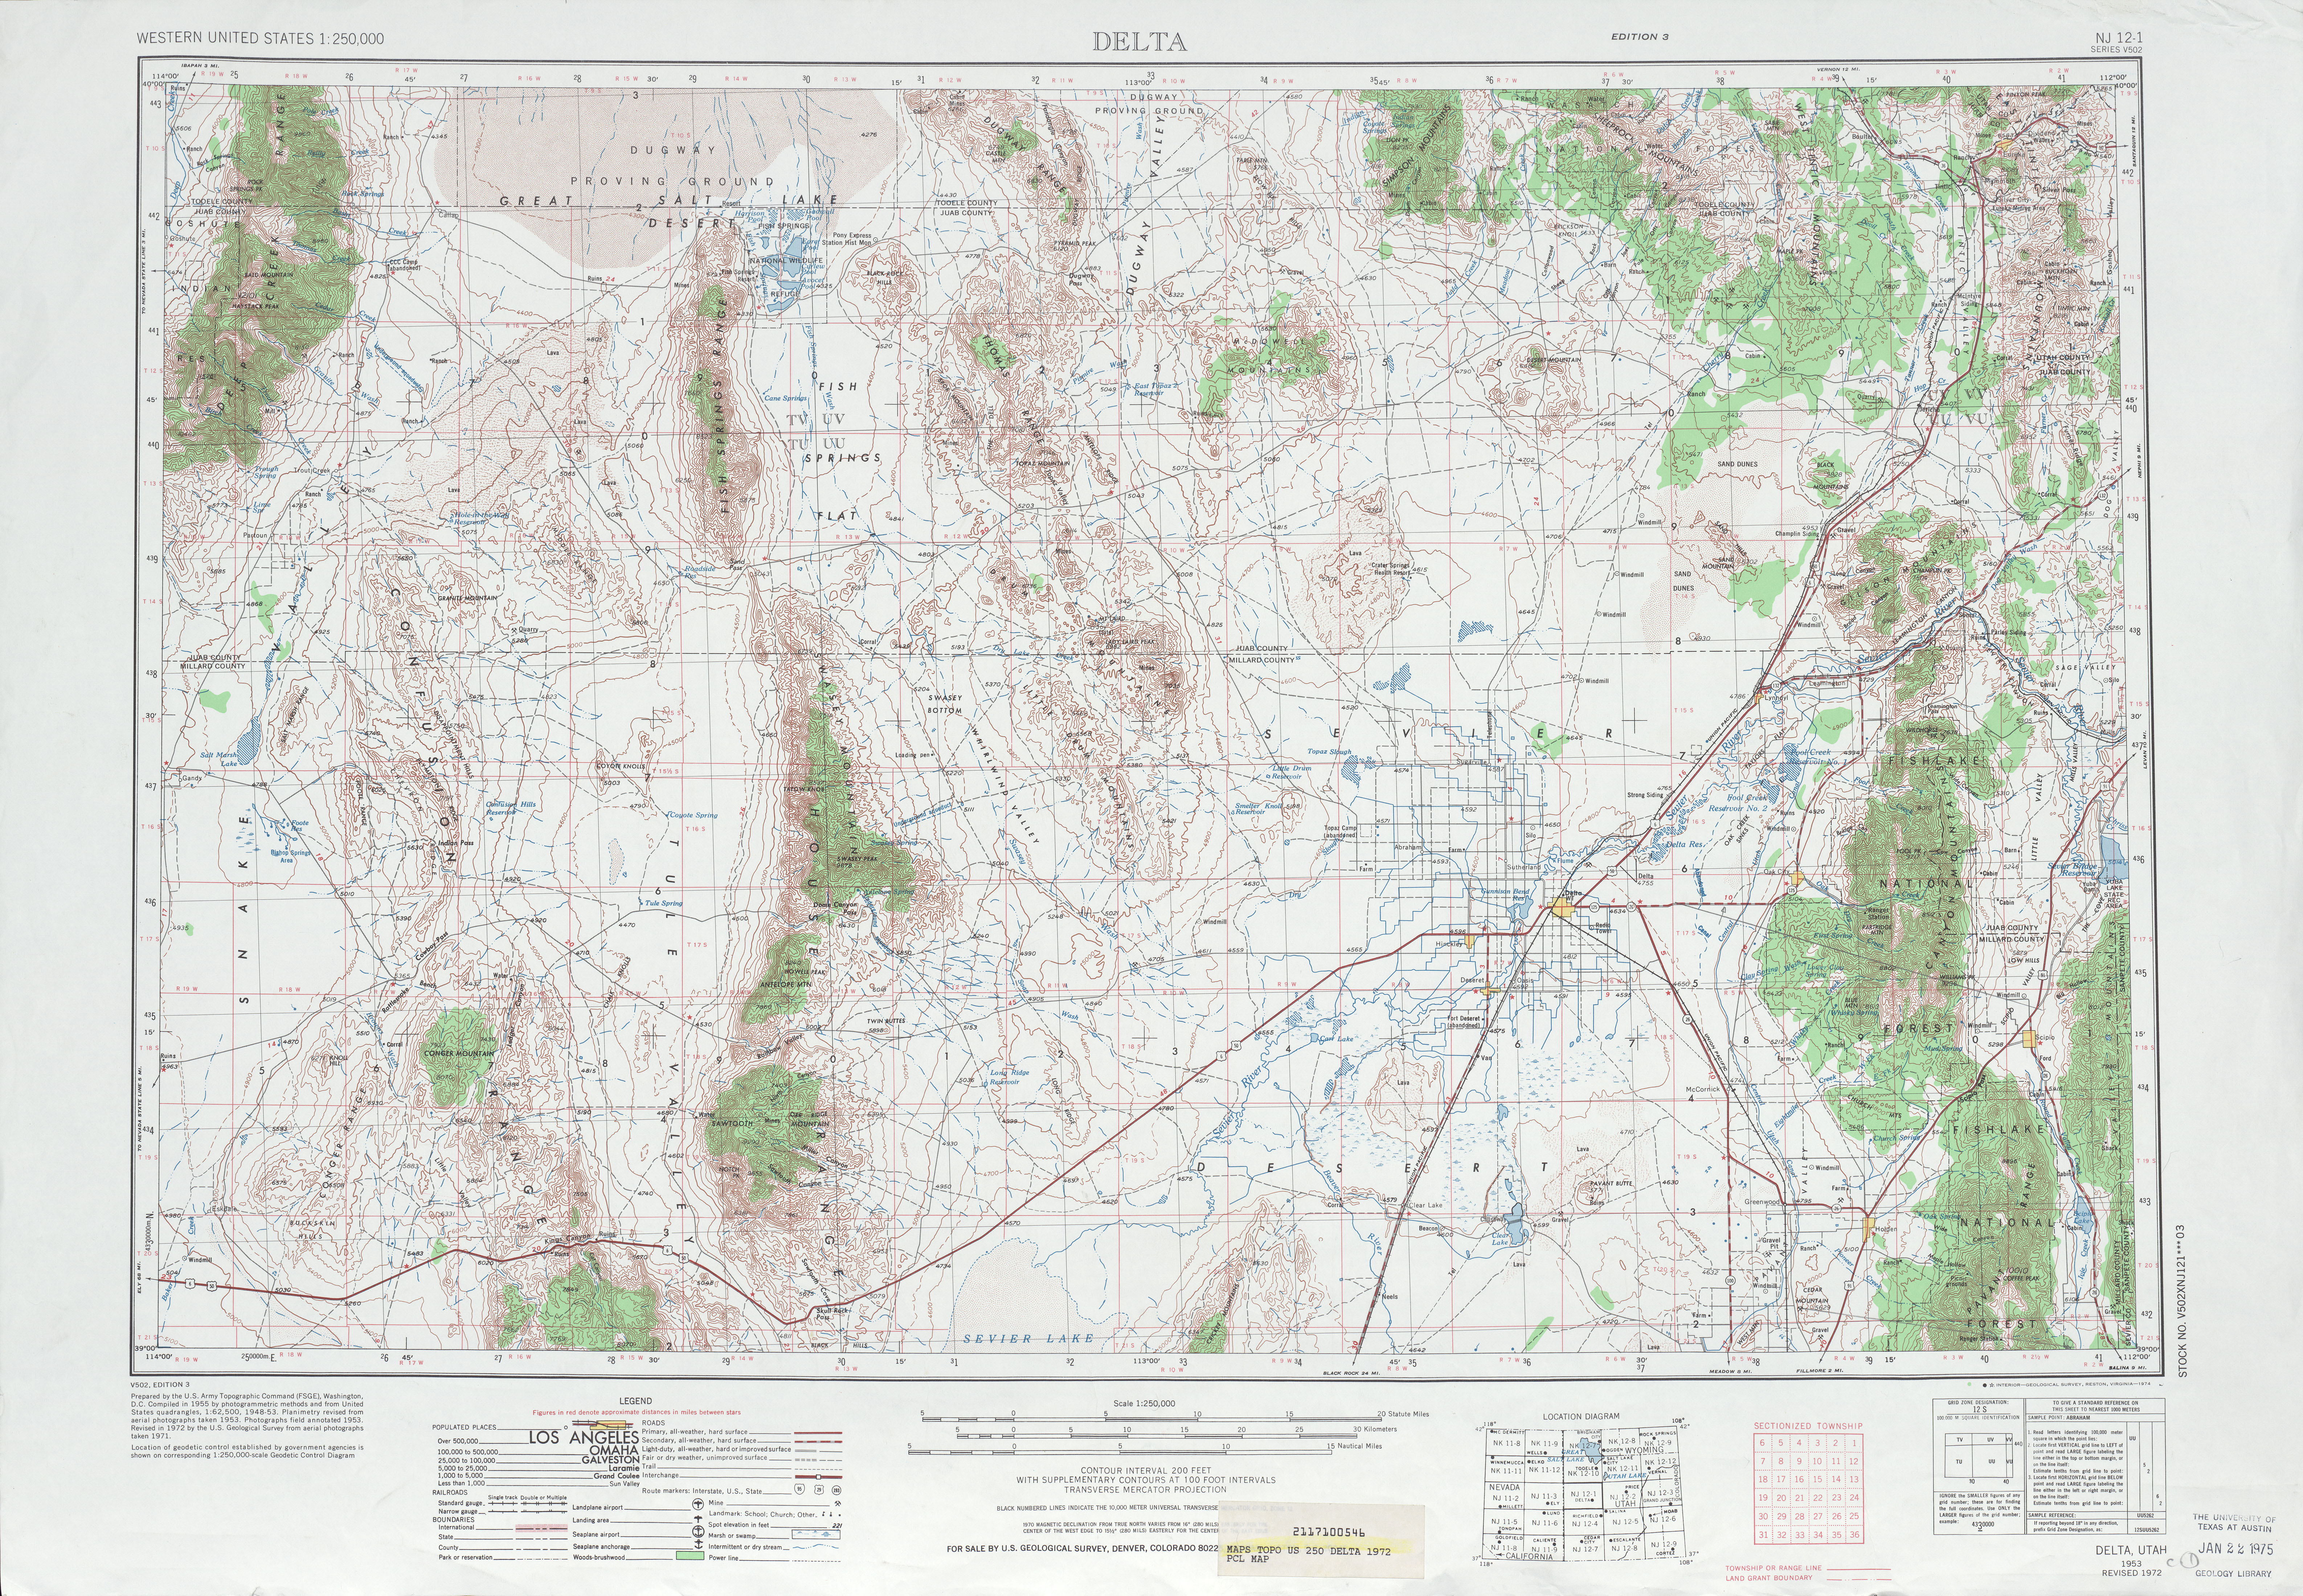 Hoja Delta del Mapa Topográfico de los Estados Unidos 1972